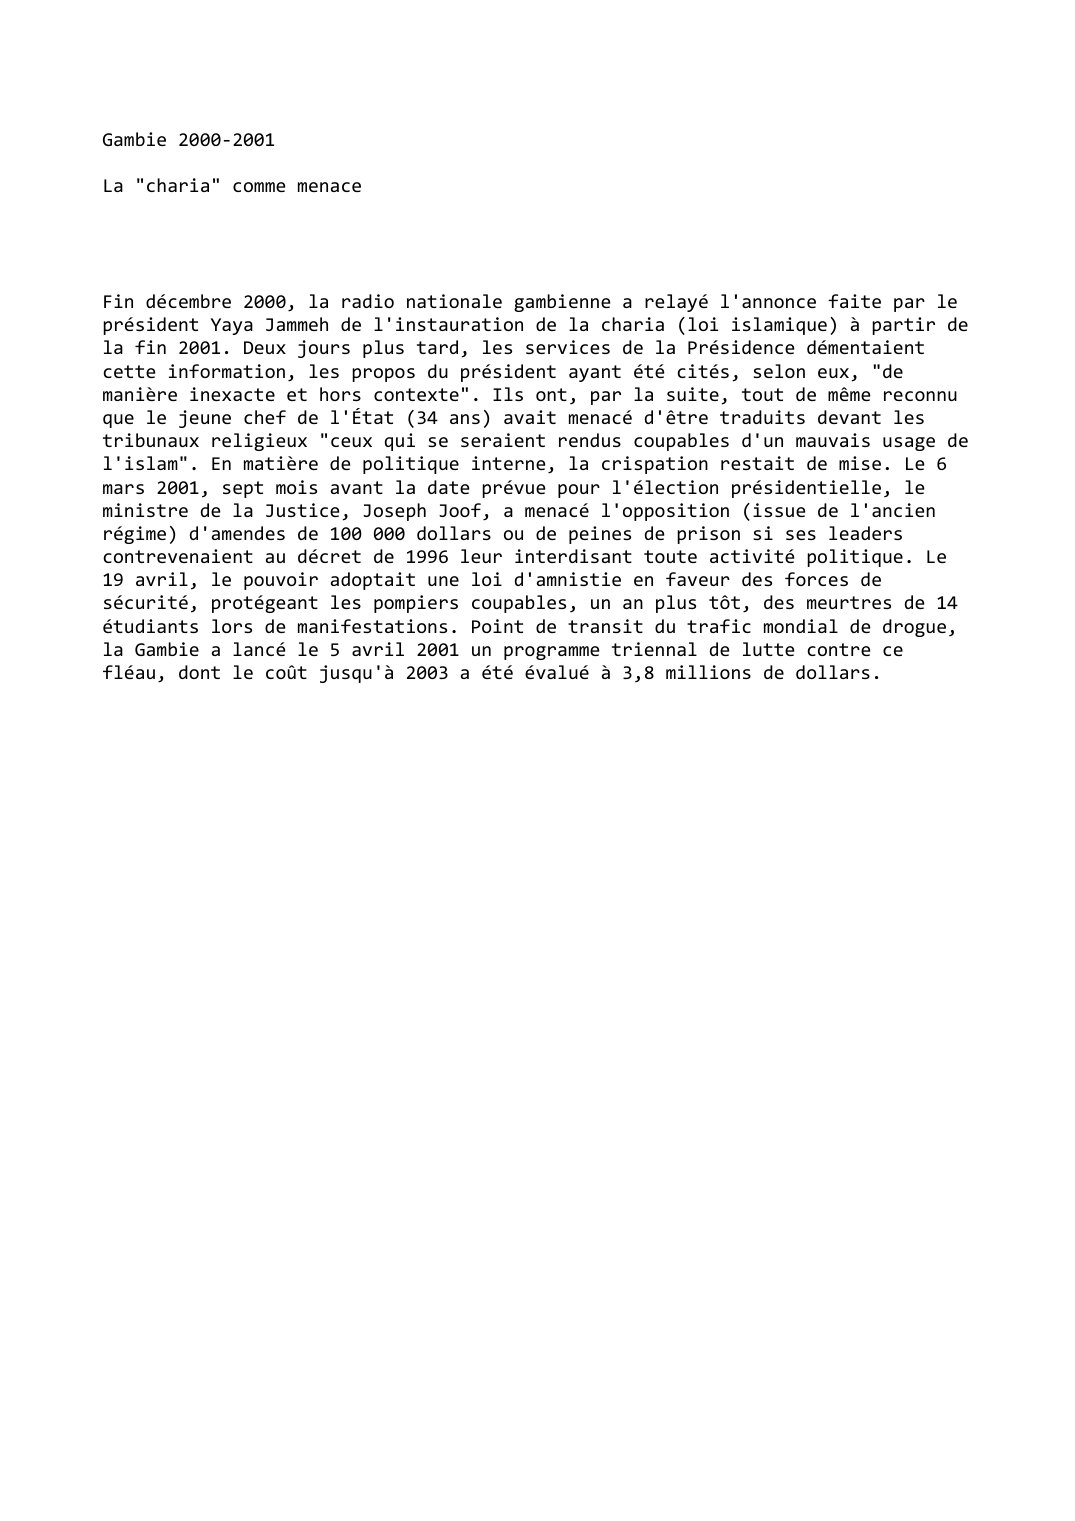 Prévisualisation du document Gambie (2000-2001): La "charia" comme menace